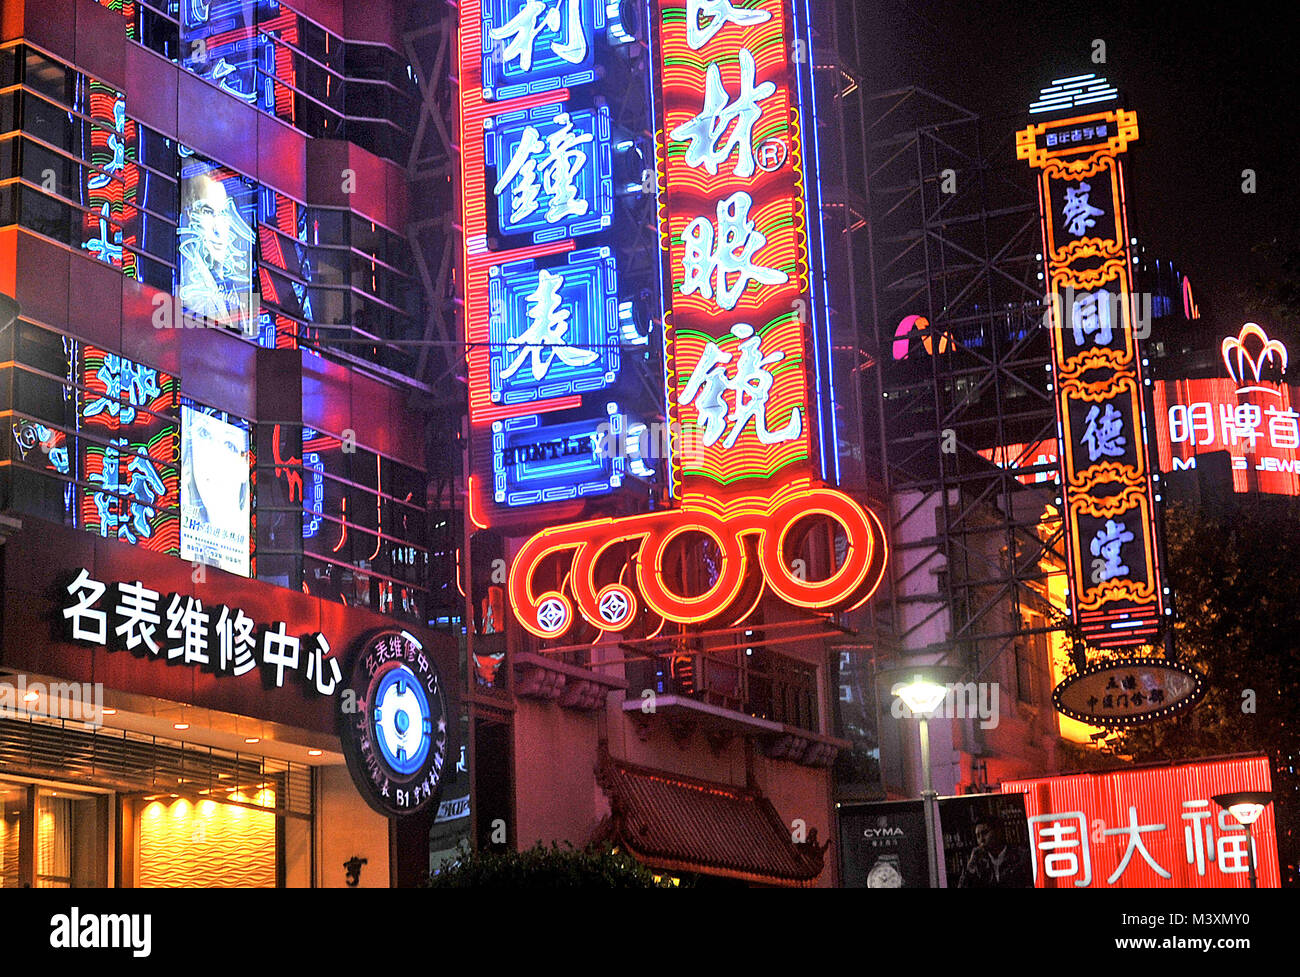 Nanjing Donglu avenue by night, Nanjing Lu, Shanghai, China Stock Photo